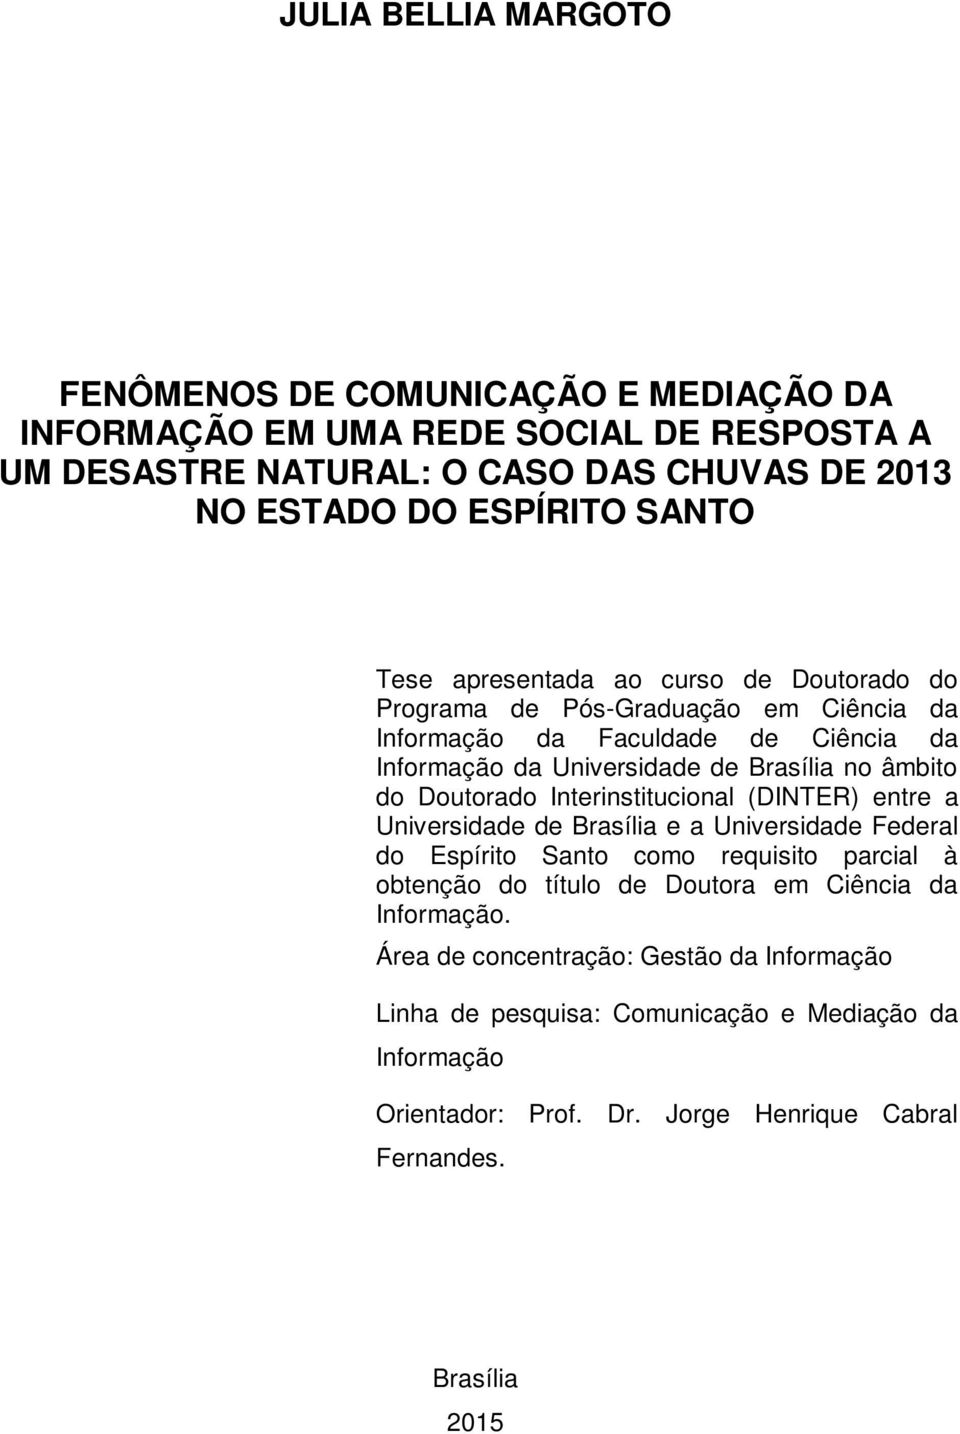 Doutorado Interinstitucional (DINTER) entre a Universidade de Brasília e a Universidade Federal do Espírito Santo como requisito parcial à obtenção do título de Doutora em